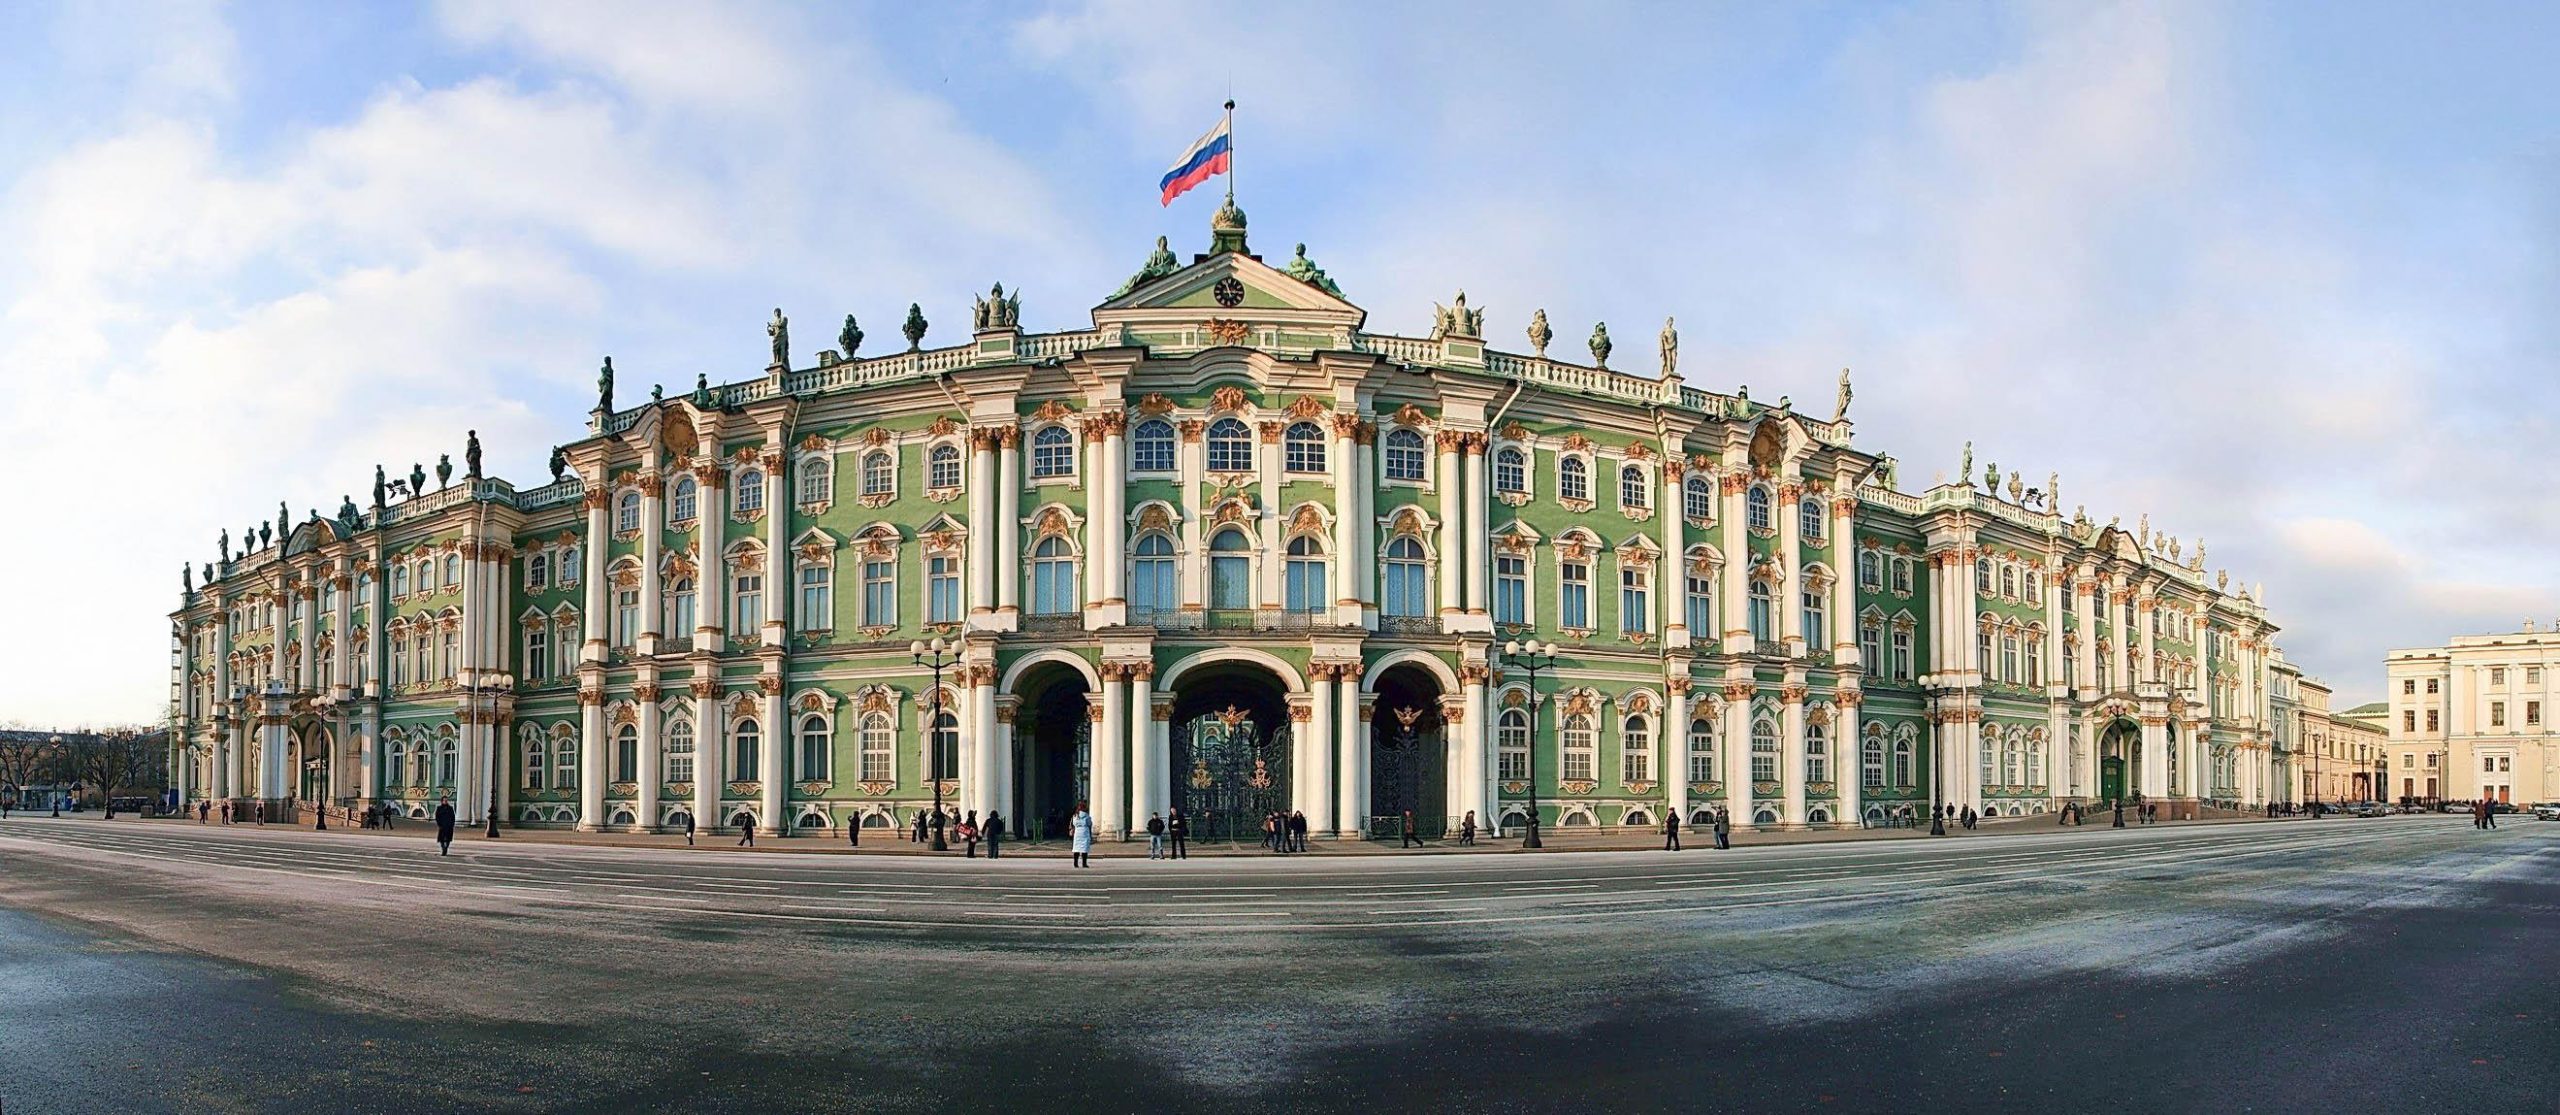 Cung điện mùa đông - Cung điện nguy nga, tráng lệ bậc nhất ở Nga